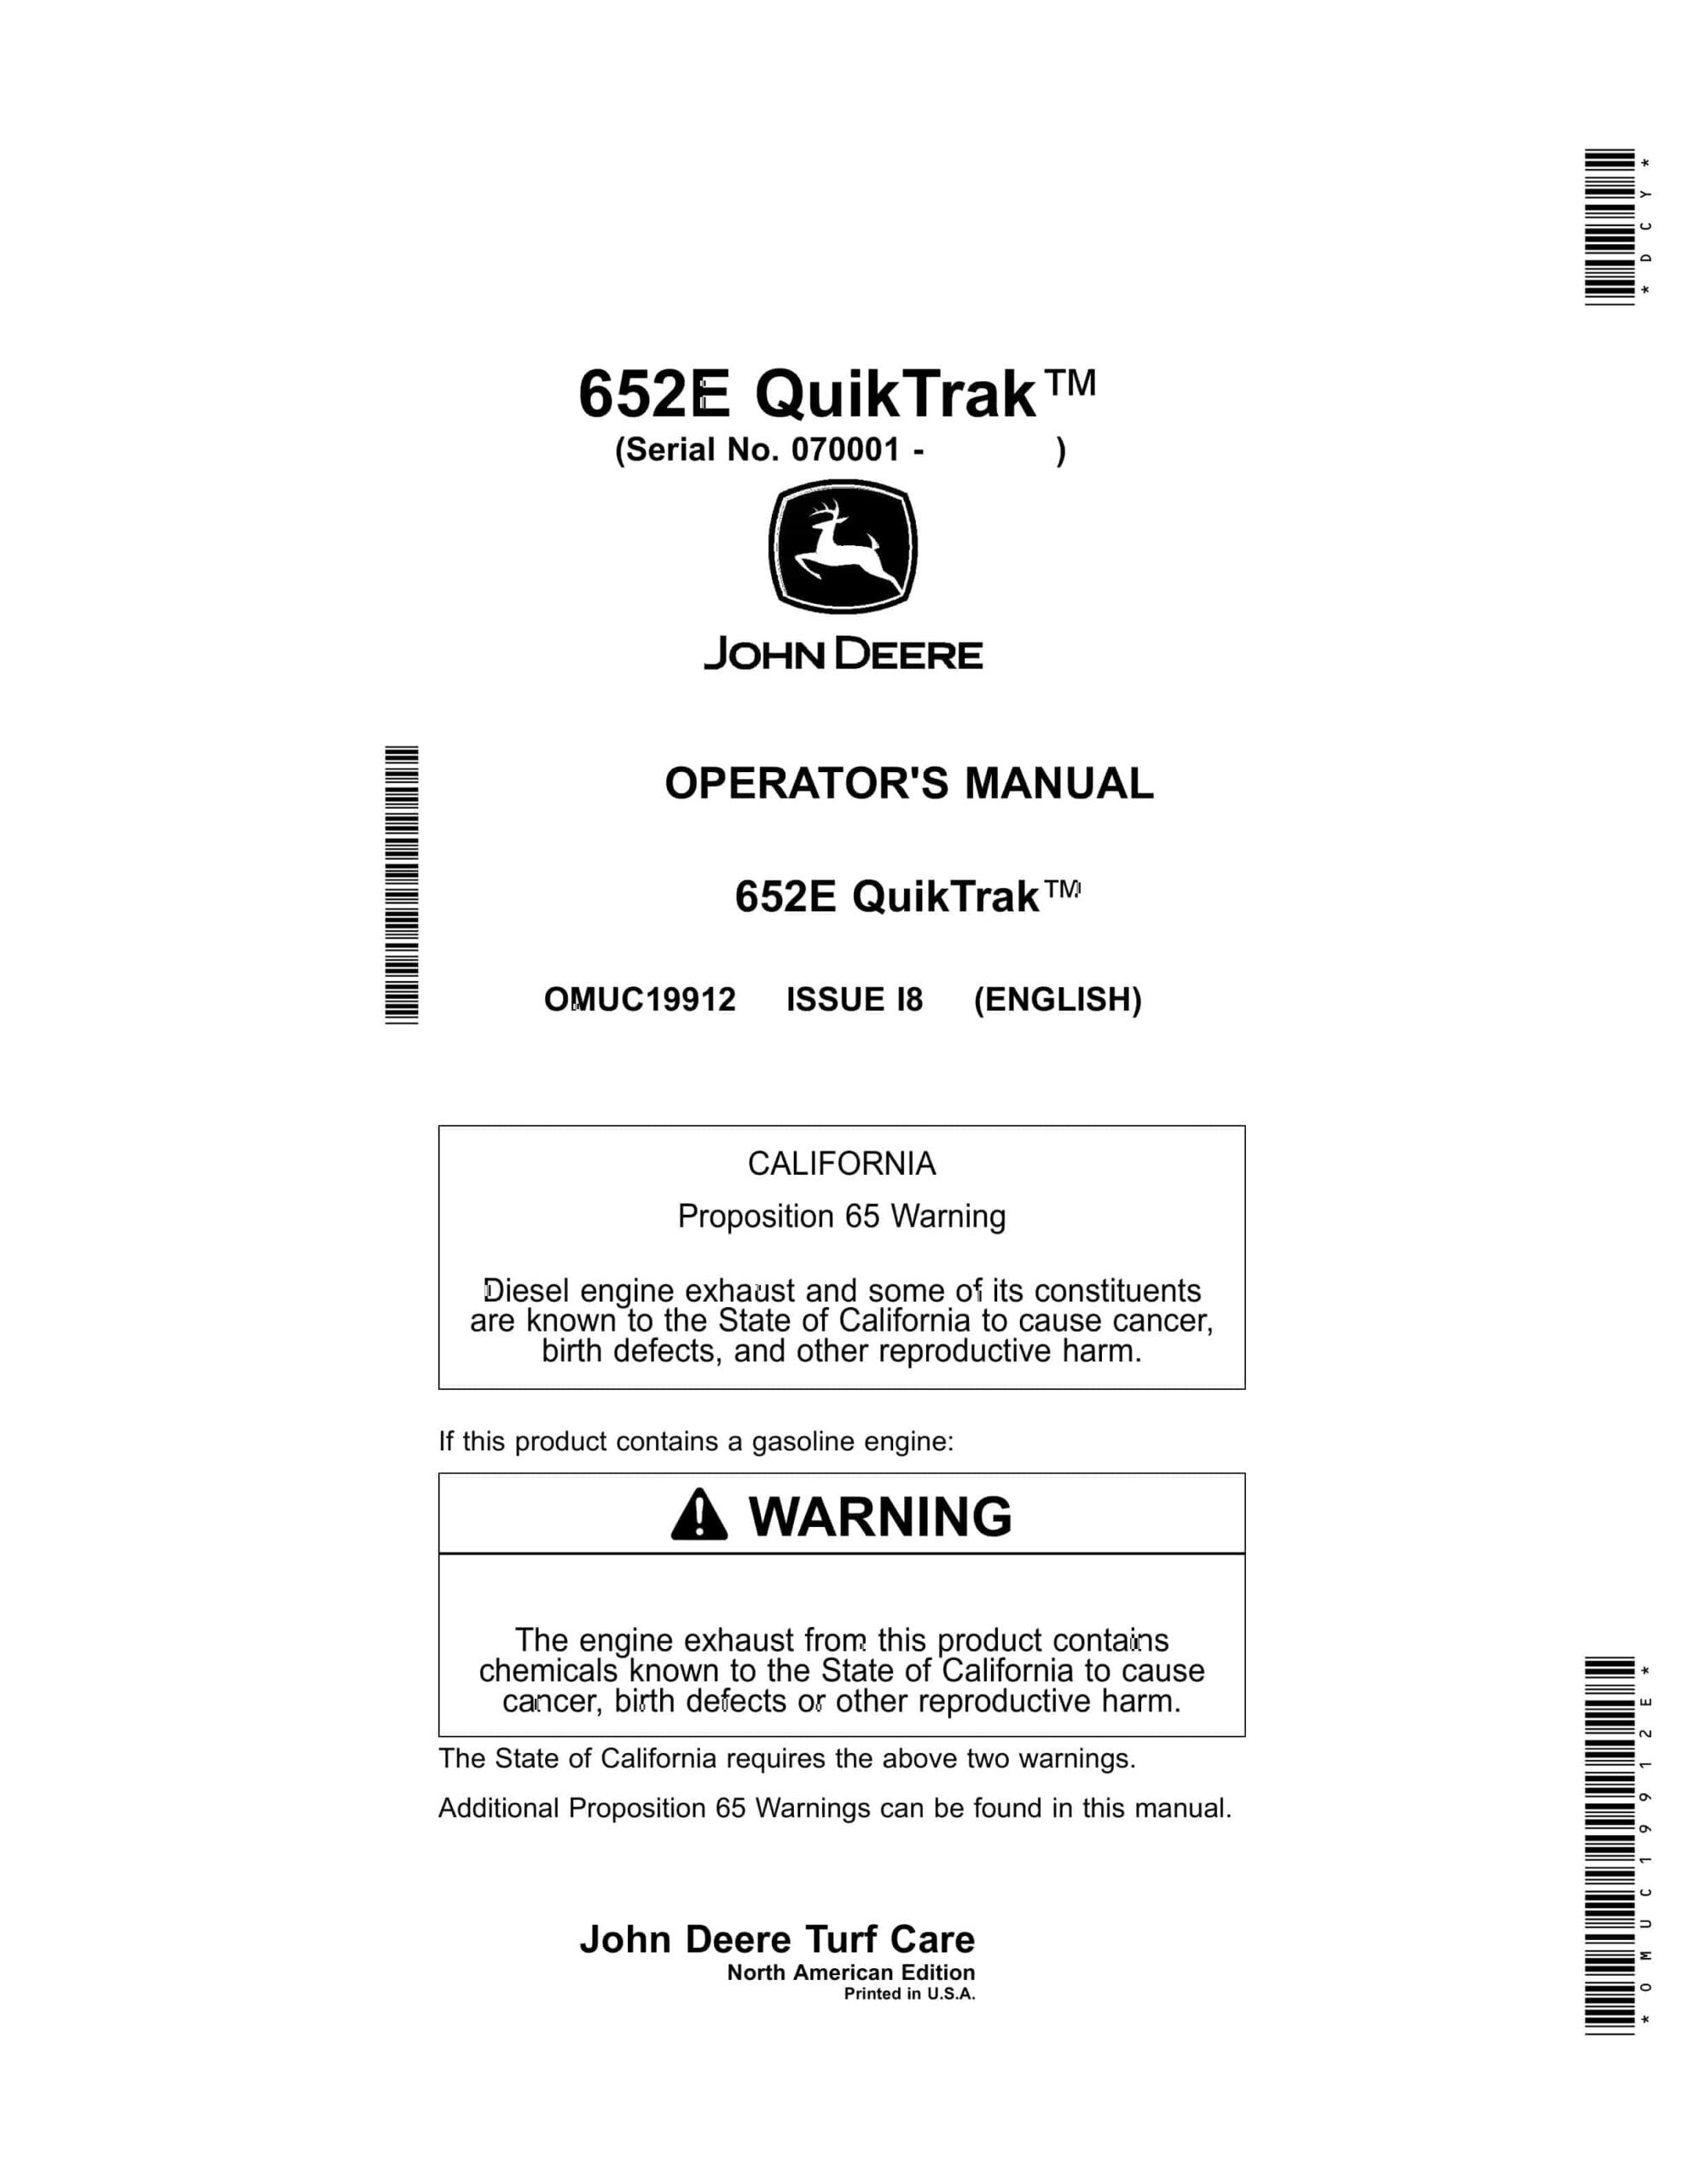 John Deere 652E QuikTrak Operator Manual OMUC19912E-1